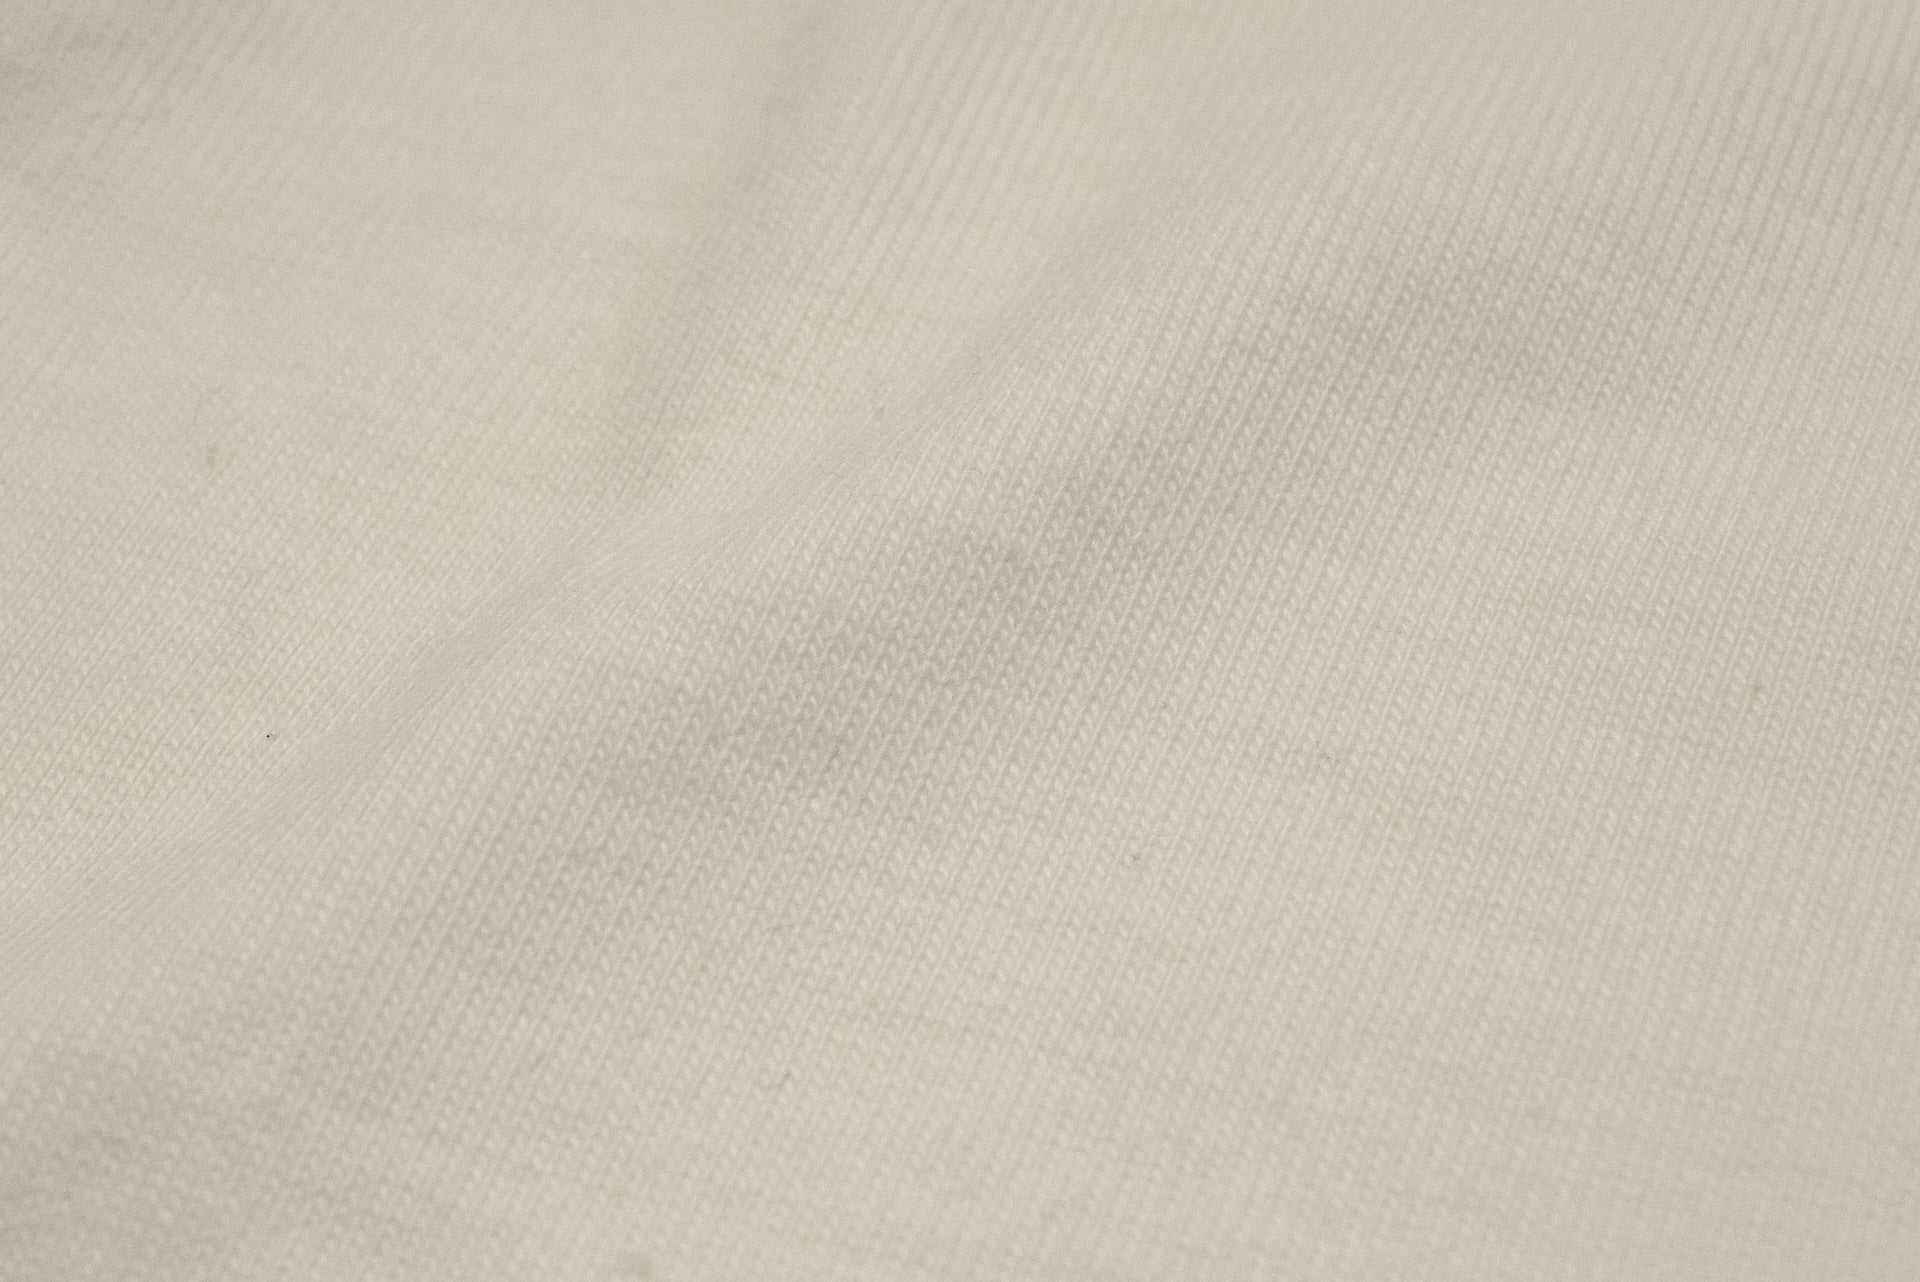 UES 7oz "Suvin Cotton" Plain Pocket Tee (White)